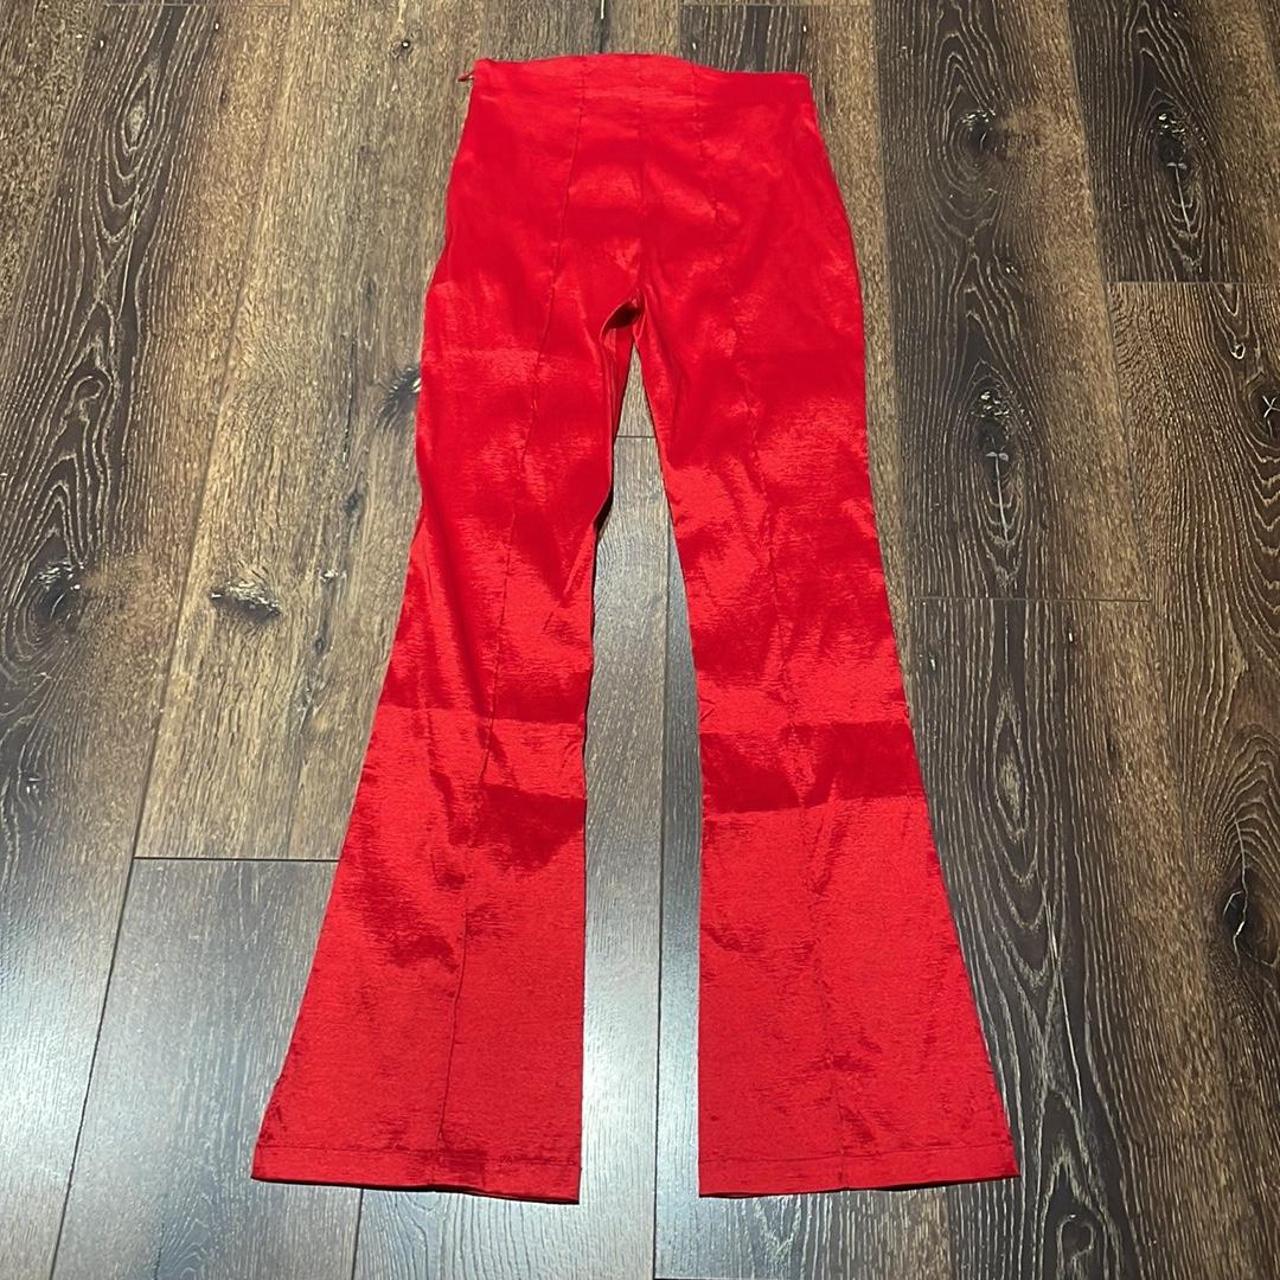 Hosbjerg Women's Red Trousers (2)